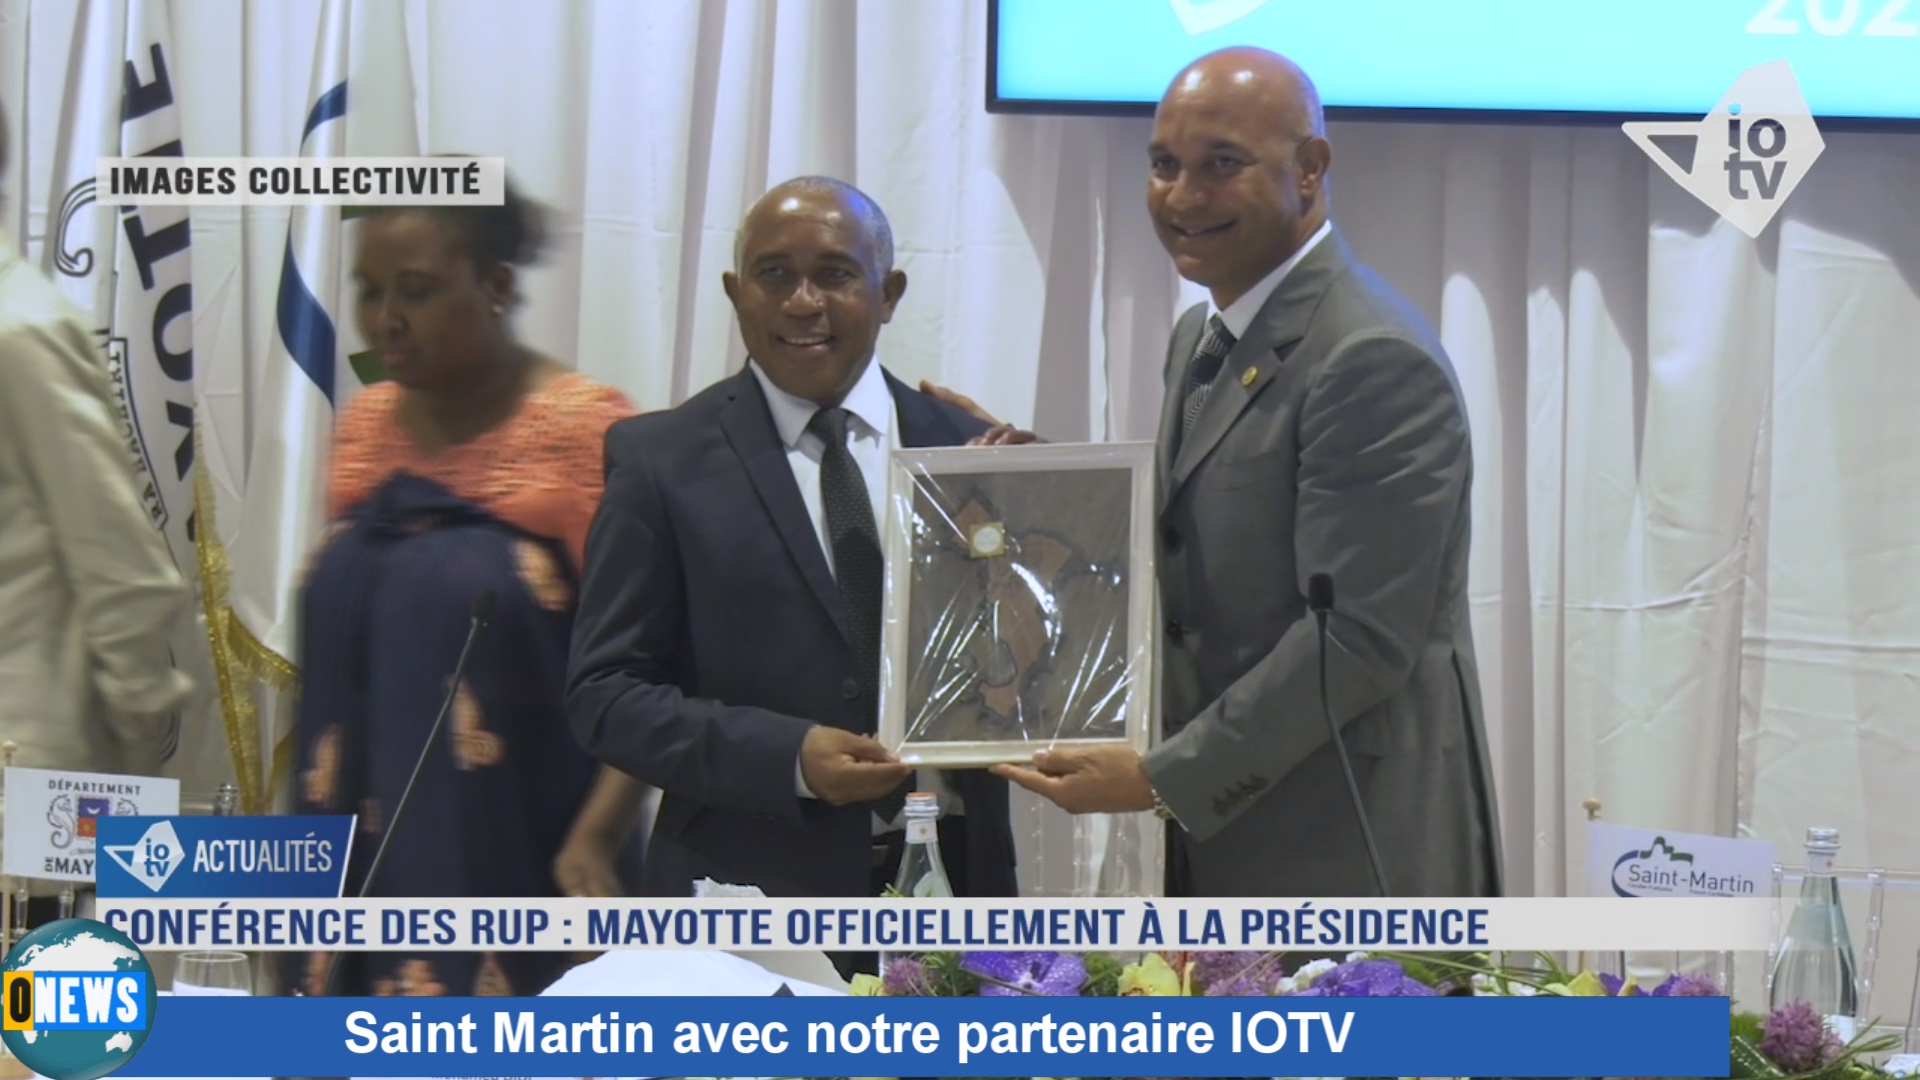 [Vidéo] Onews Saint Martin avec notre partenaire IOTV avec à la une Mayotte qui prend la présidence des RUP